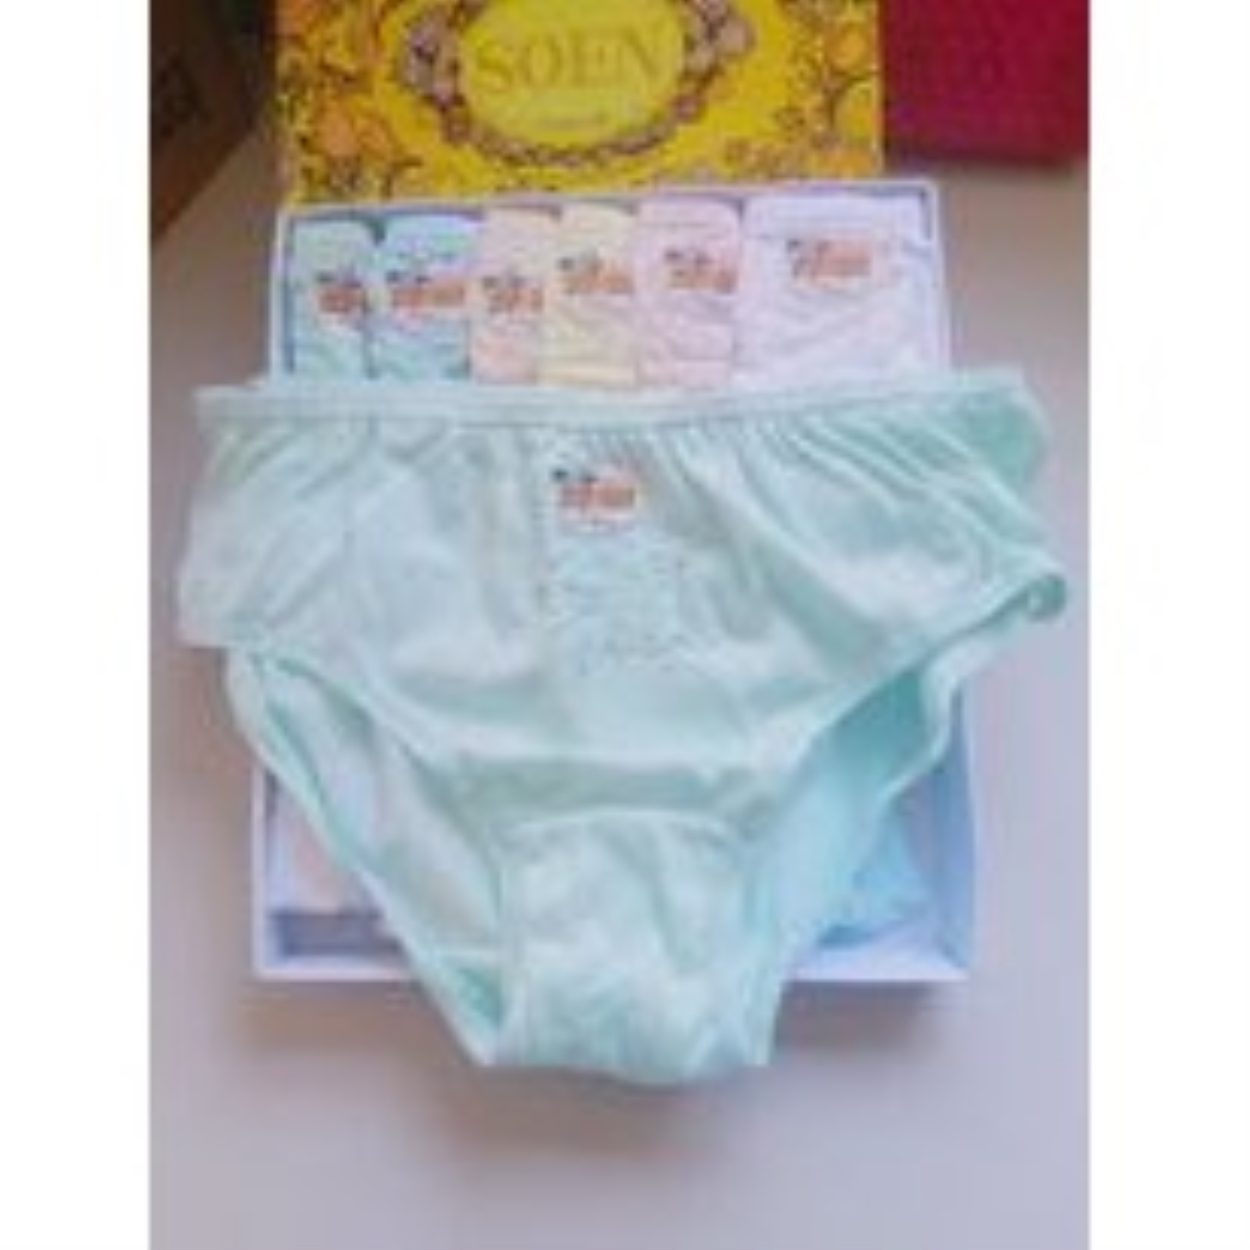 12 NYLON SOEN Bikini Panties Nwt Small $15.24 - PicClick